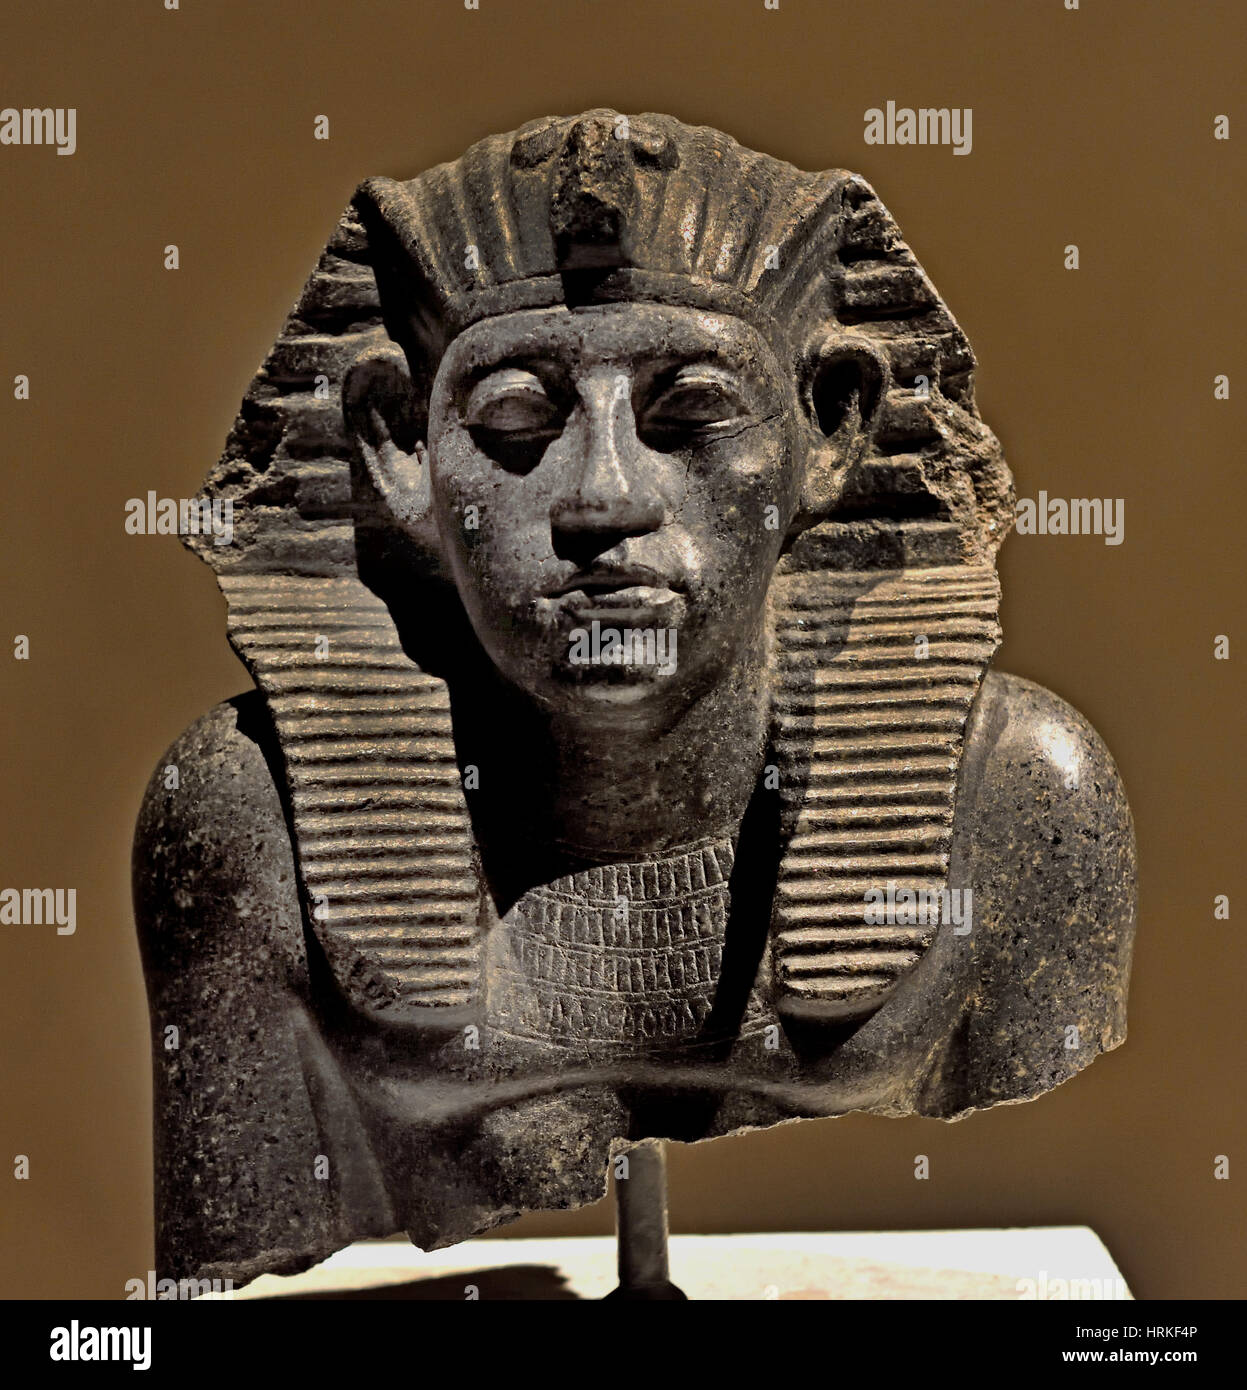 Spitze einer Statue Amenemhet III. Mit Nemes-Kopftuch Statue) Ammenemes  III. ) Mittelägypten Ägypten (Region) Granit 23 x 20 x 17 cm (Amenemhat  III, auch buchstabiert Amenemhet III, war ein Pharao der zwölften